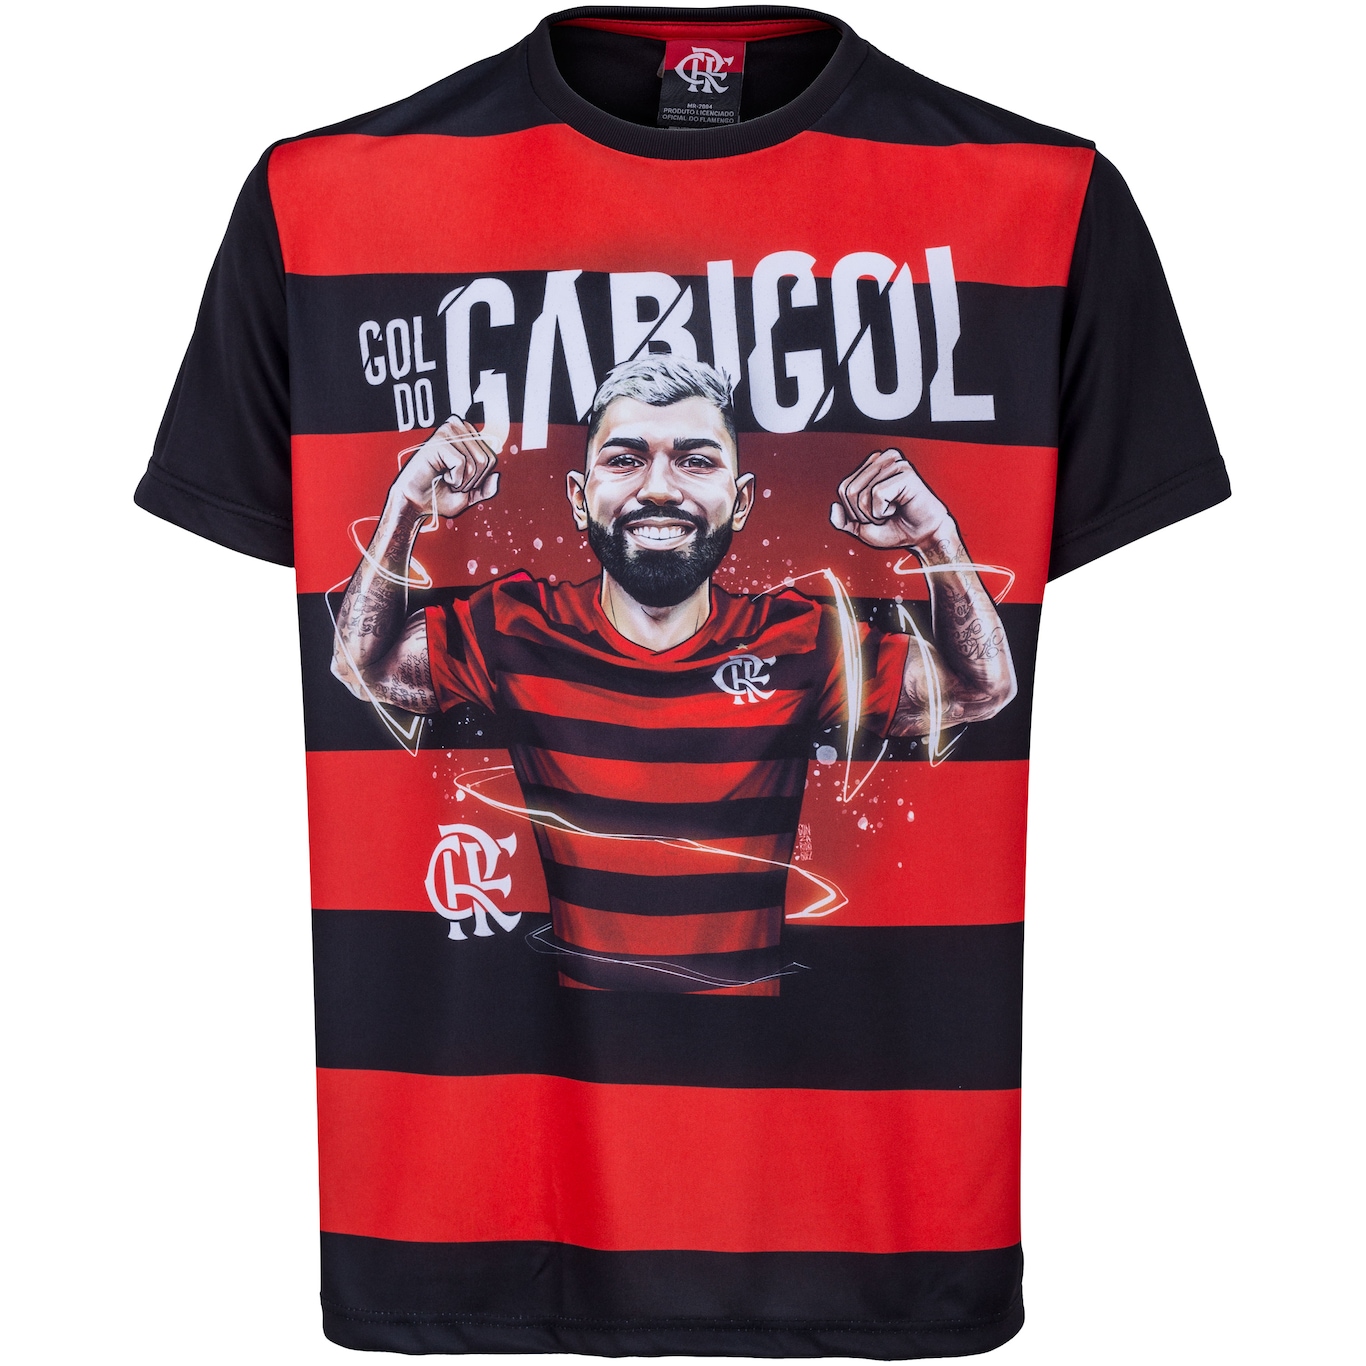 Camisa Flamengo Gabigol Juvenil Preta E Vermelha